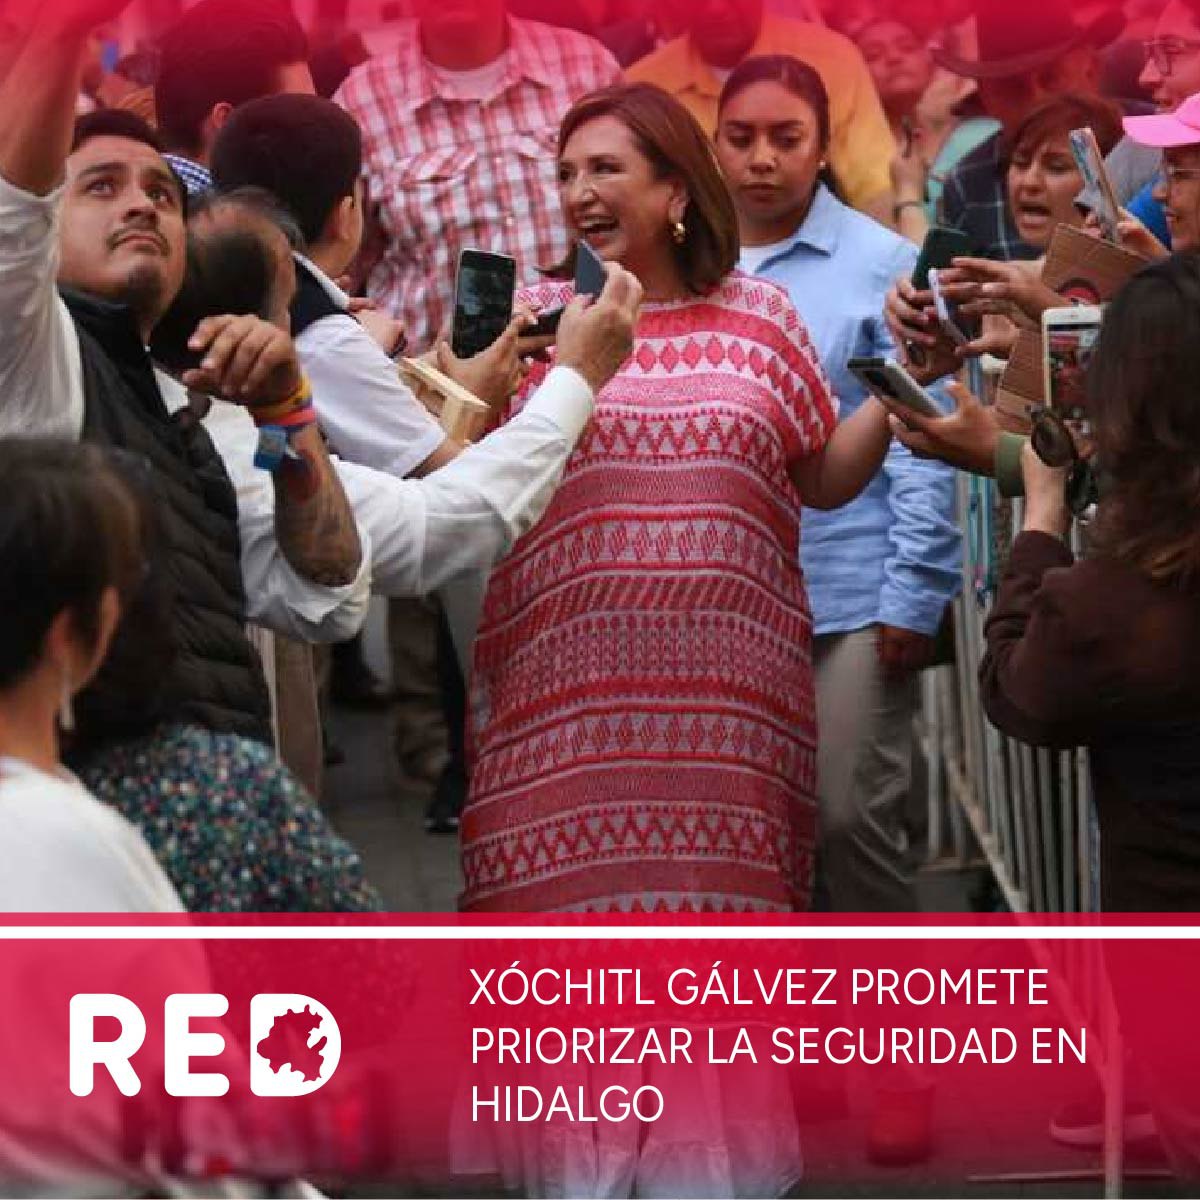 Xóchitl Gálvez Promete Priorizar la Seguridad en Hidalgo